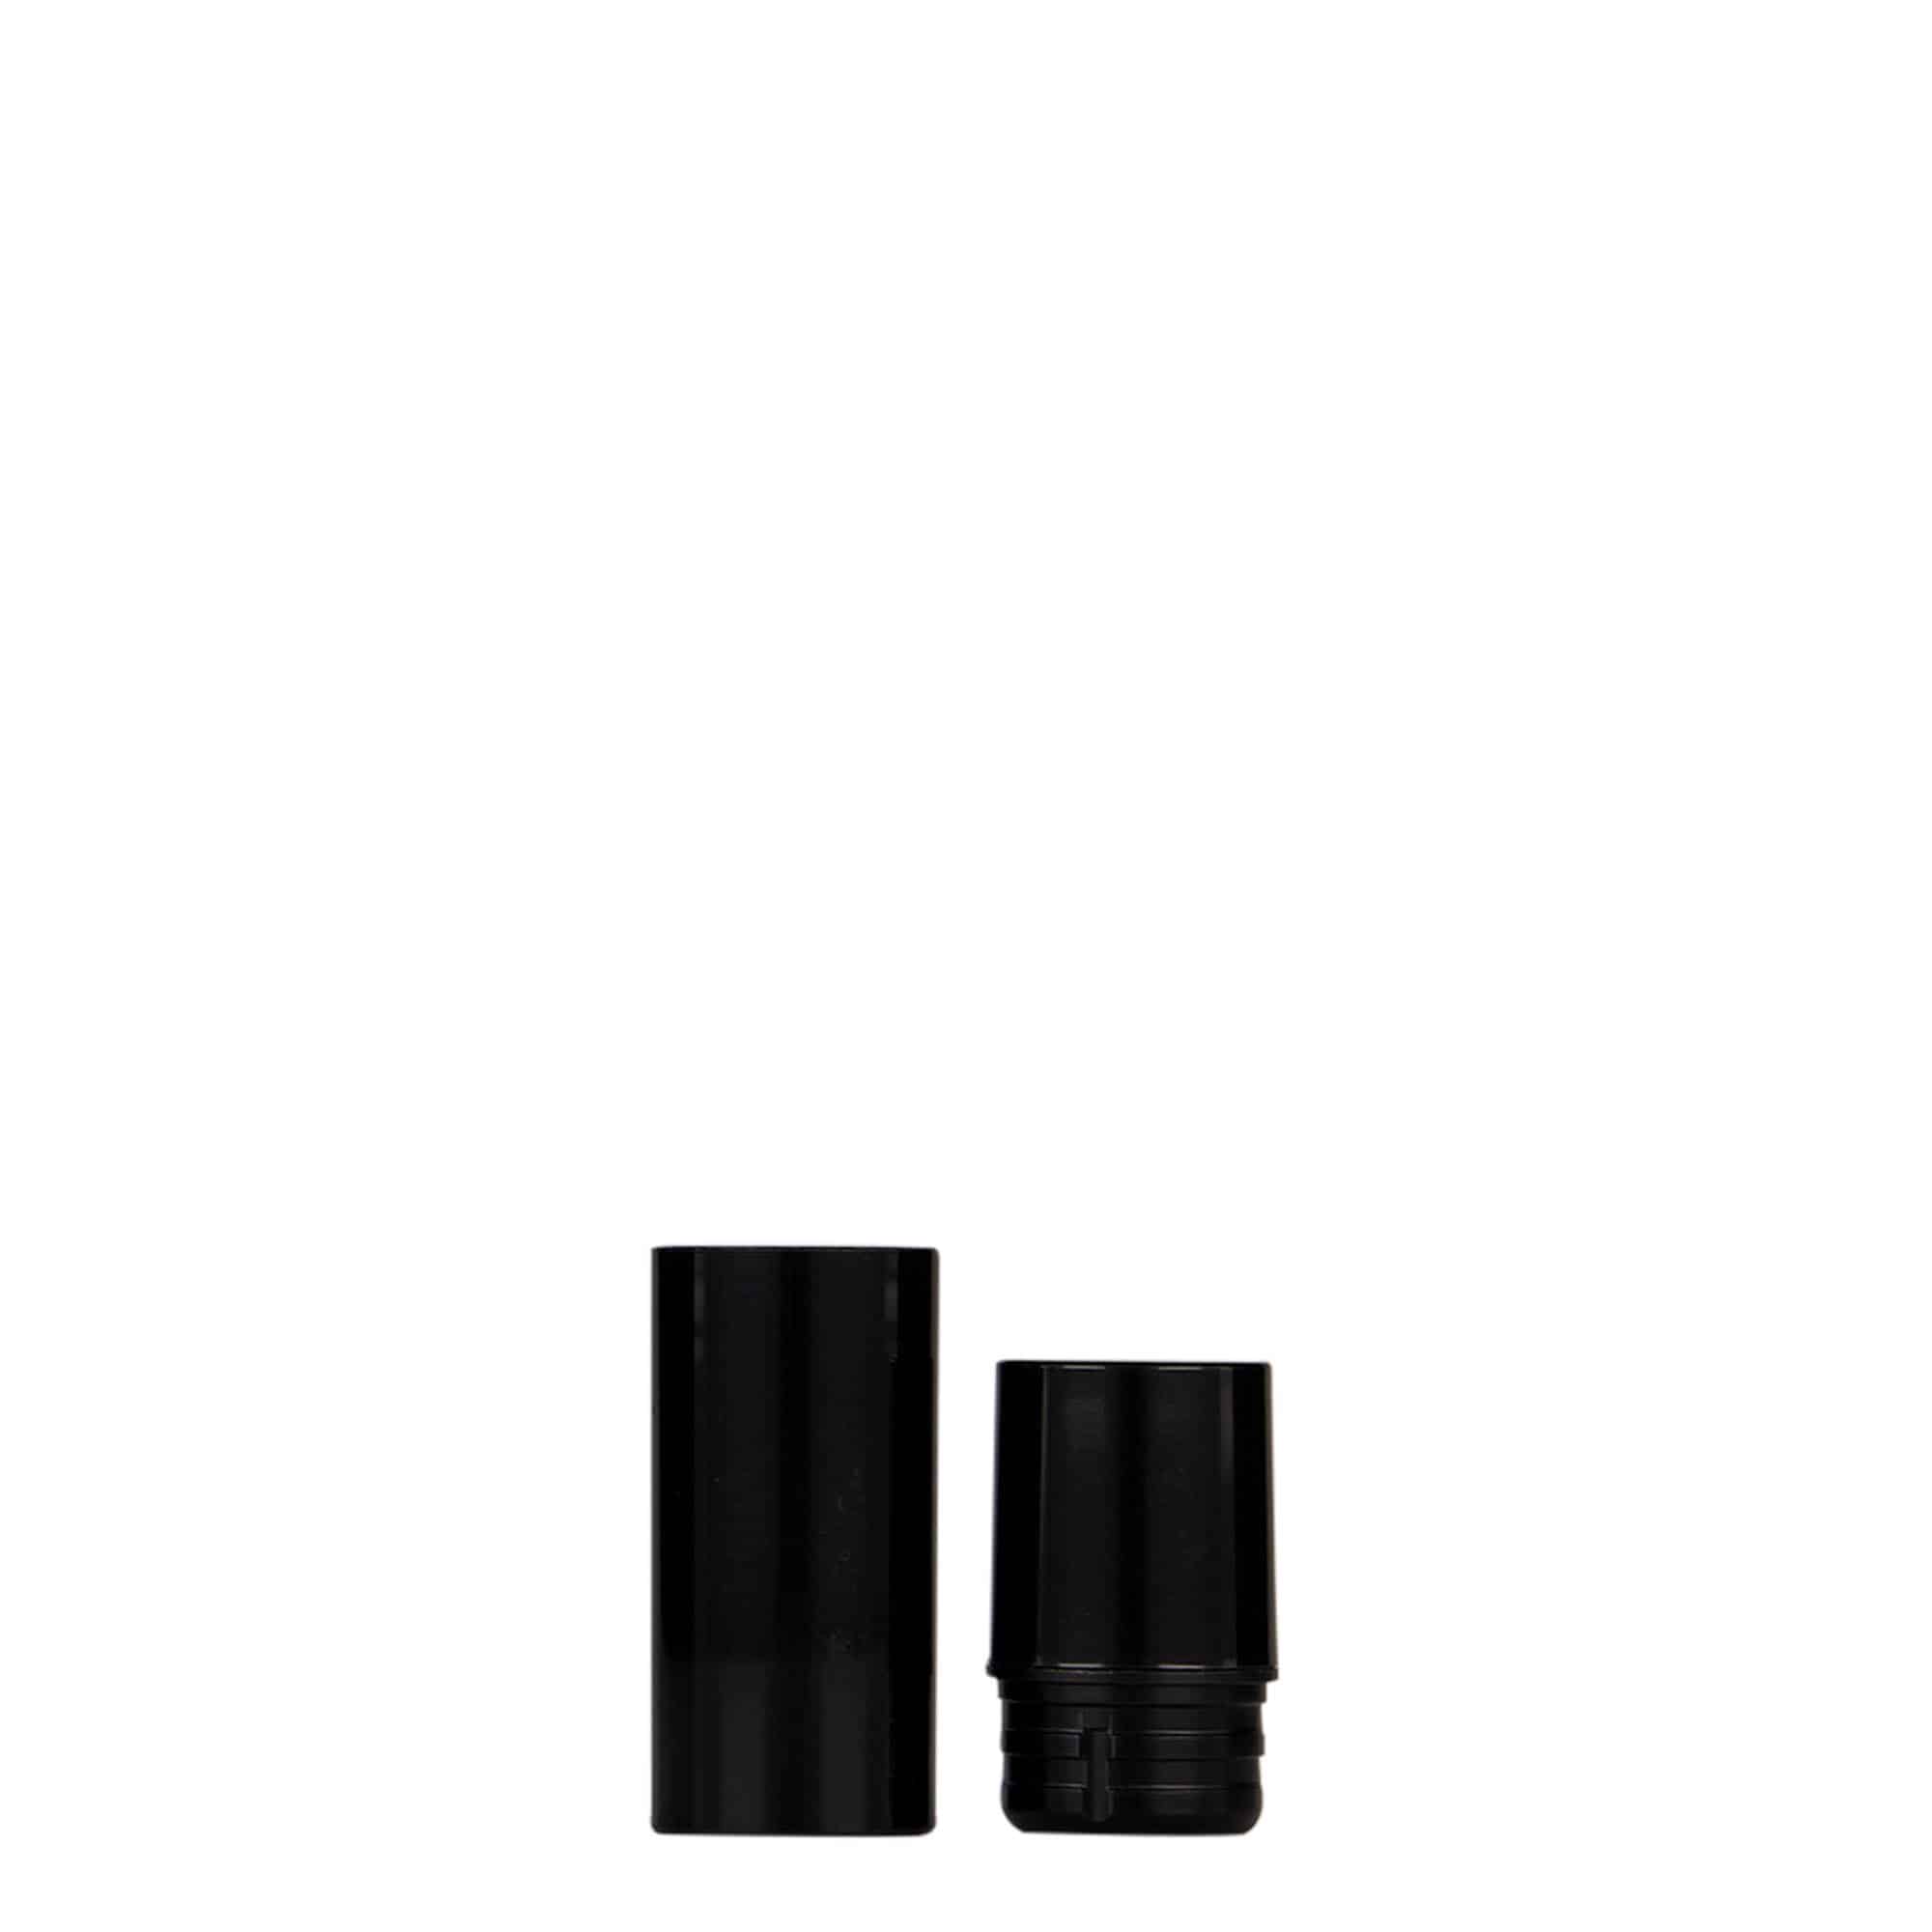 Bezvzduchový dávkovač 5 ml 'Nano', plast PP, černý